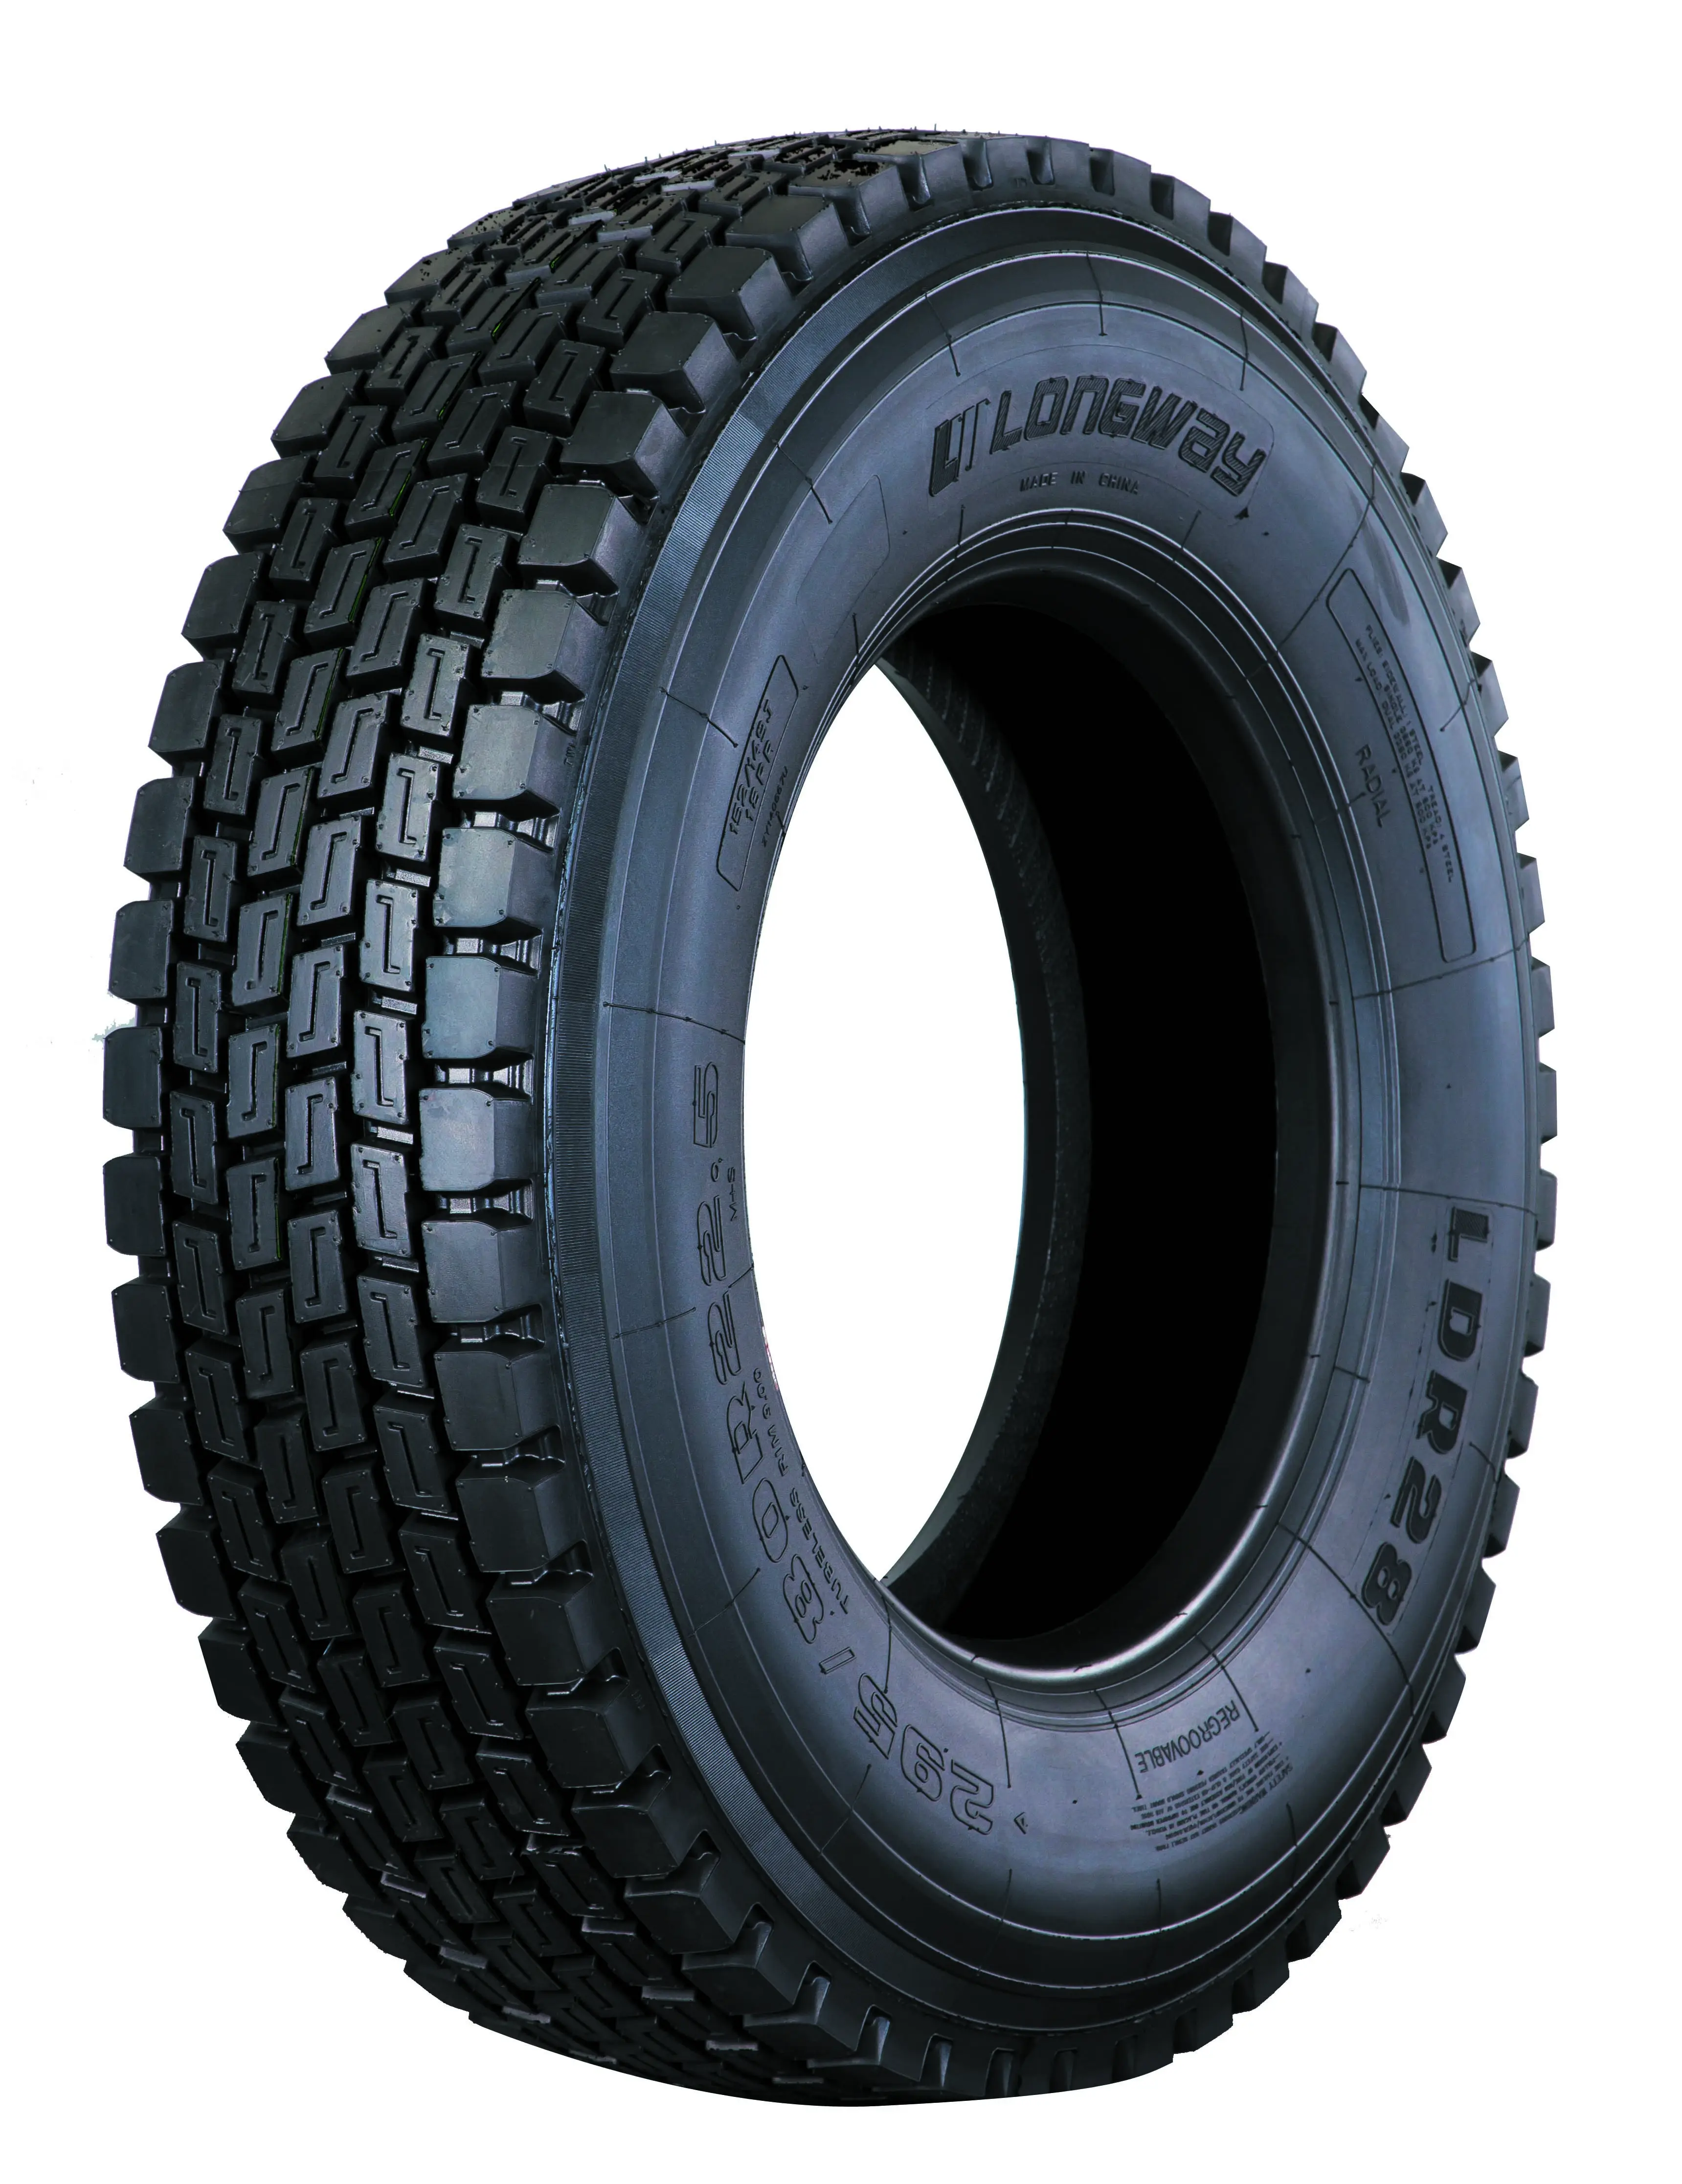 타이어 제조 세 브랜드 315/80R22.5 385/65R22.5 295/80R22.5 트럭 타이어